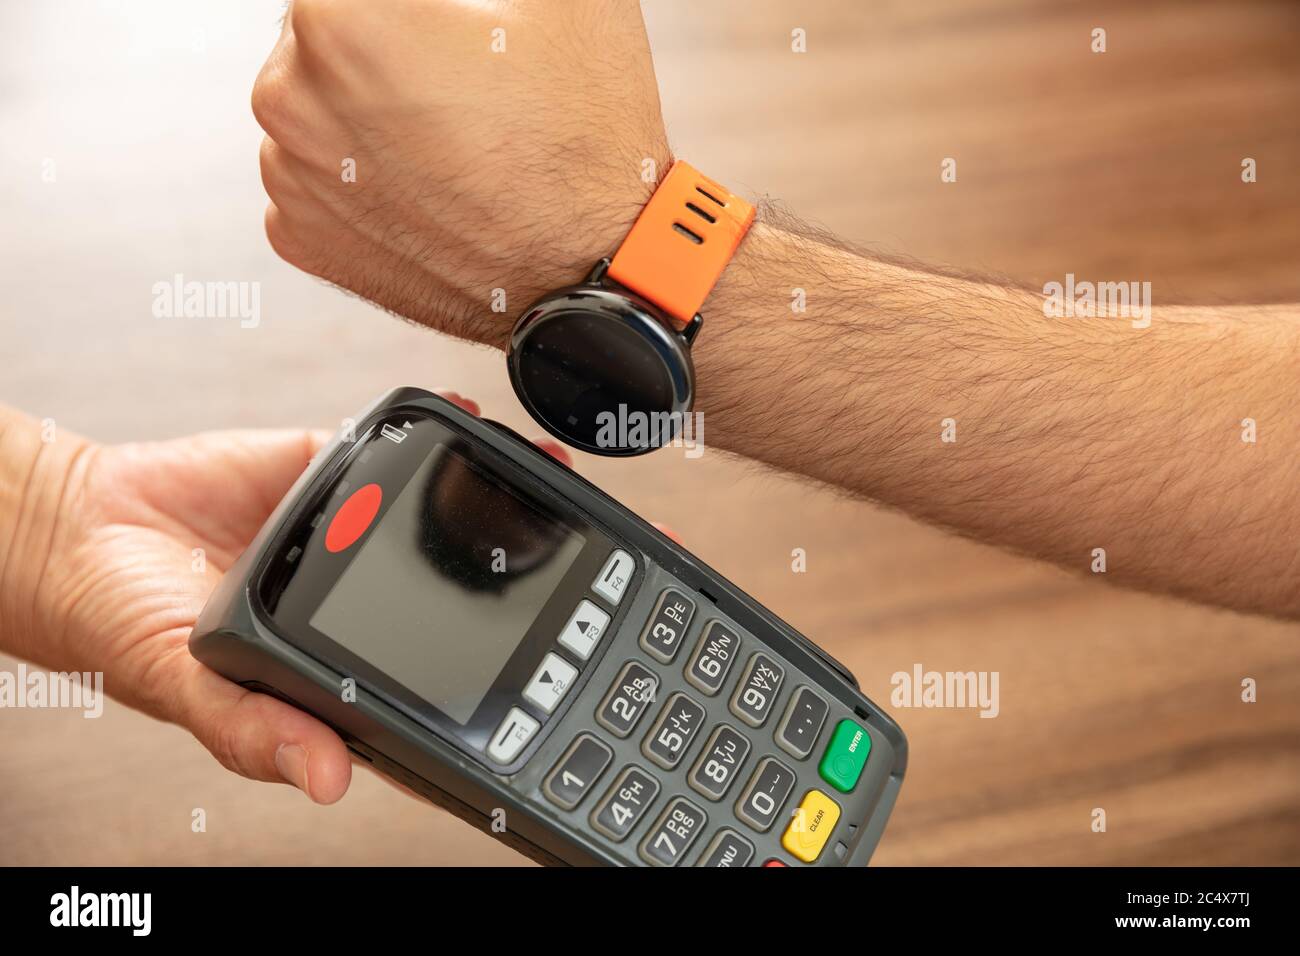 Mobile Bezahlung, Smart Watch nfc, drahtlose Nahfeldkommunikation. Kassierer und Kunden Hände mit POS-Maschine und Smart Watch, closeup vi Stockfoto